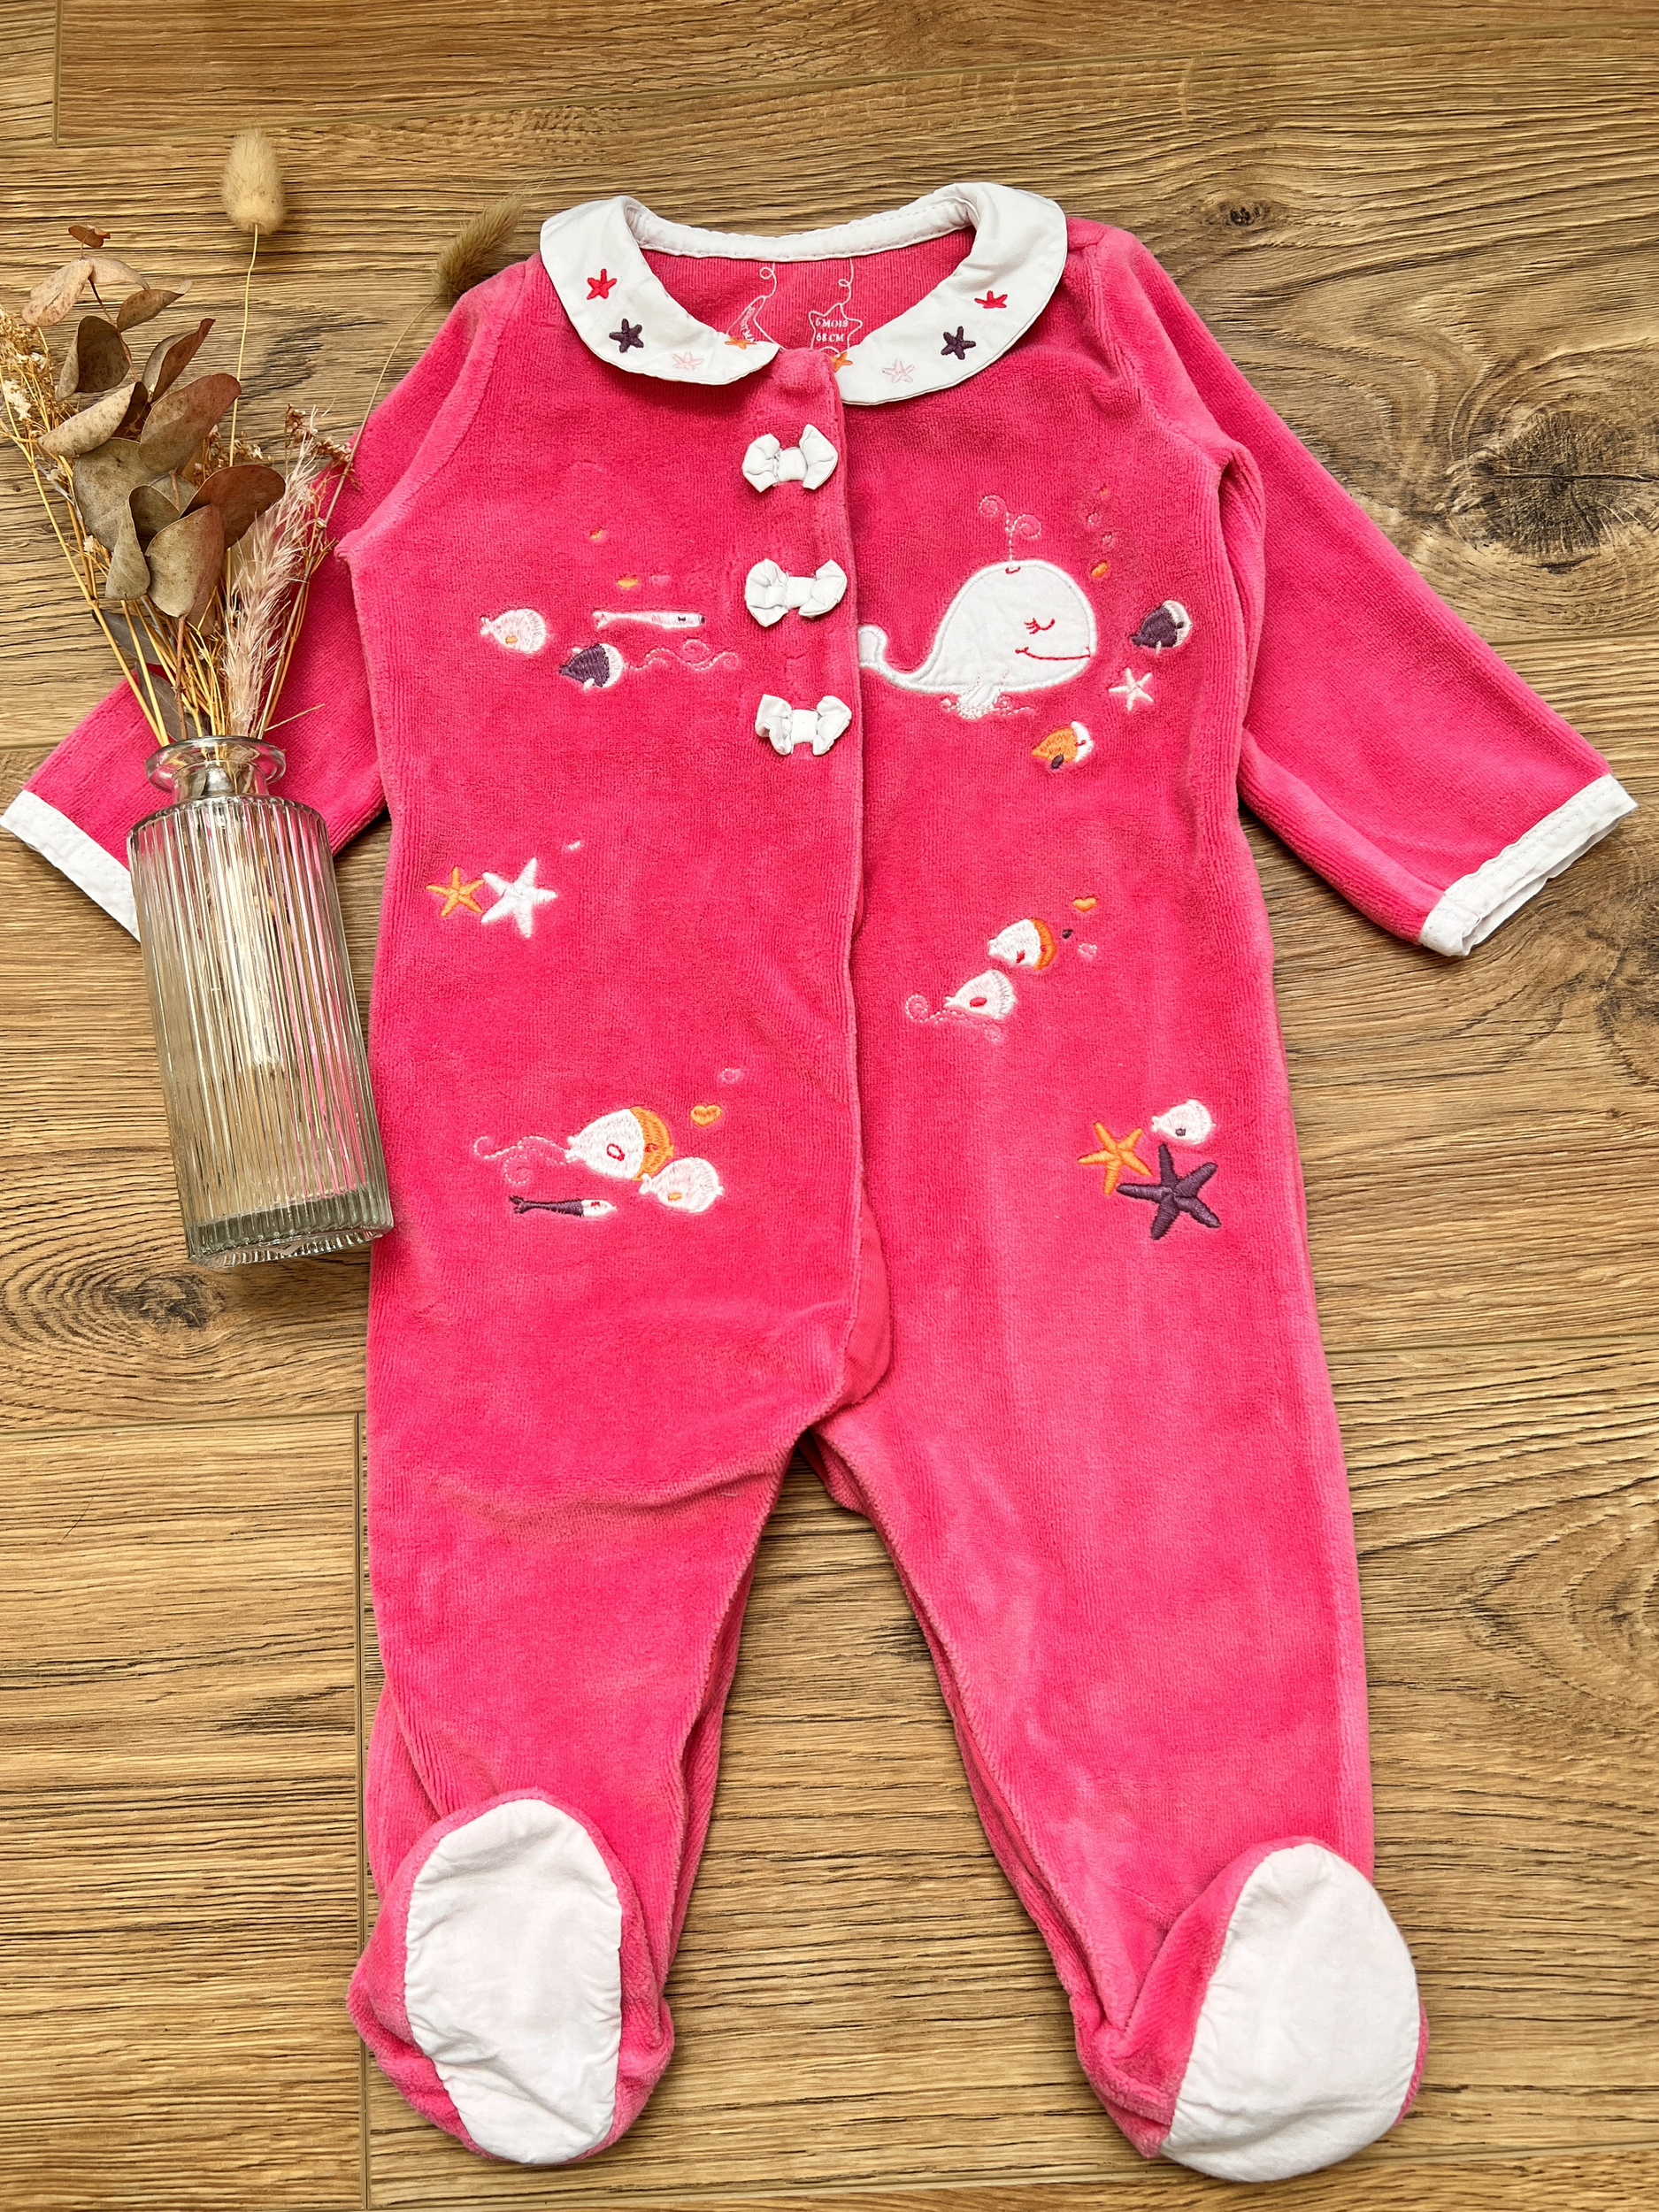 Pyjama velours rouge bébé fille 6 MOIS SERGENT MAJOR